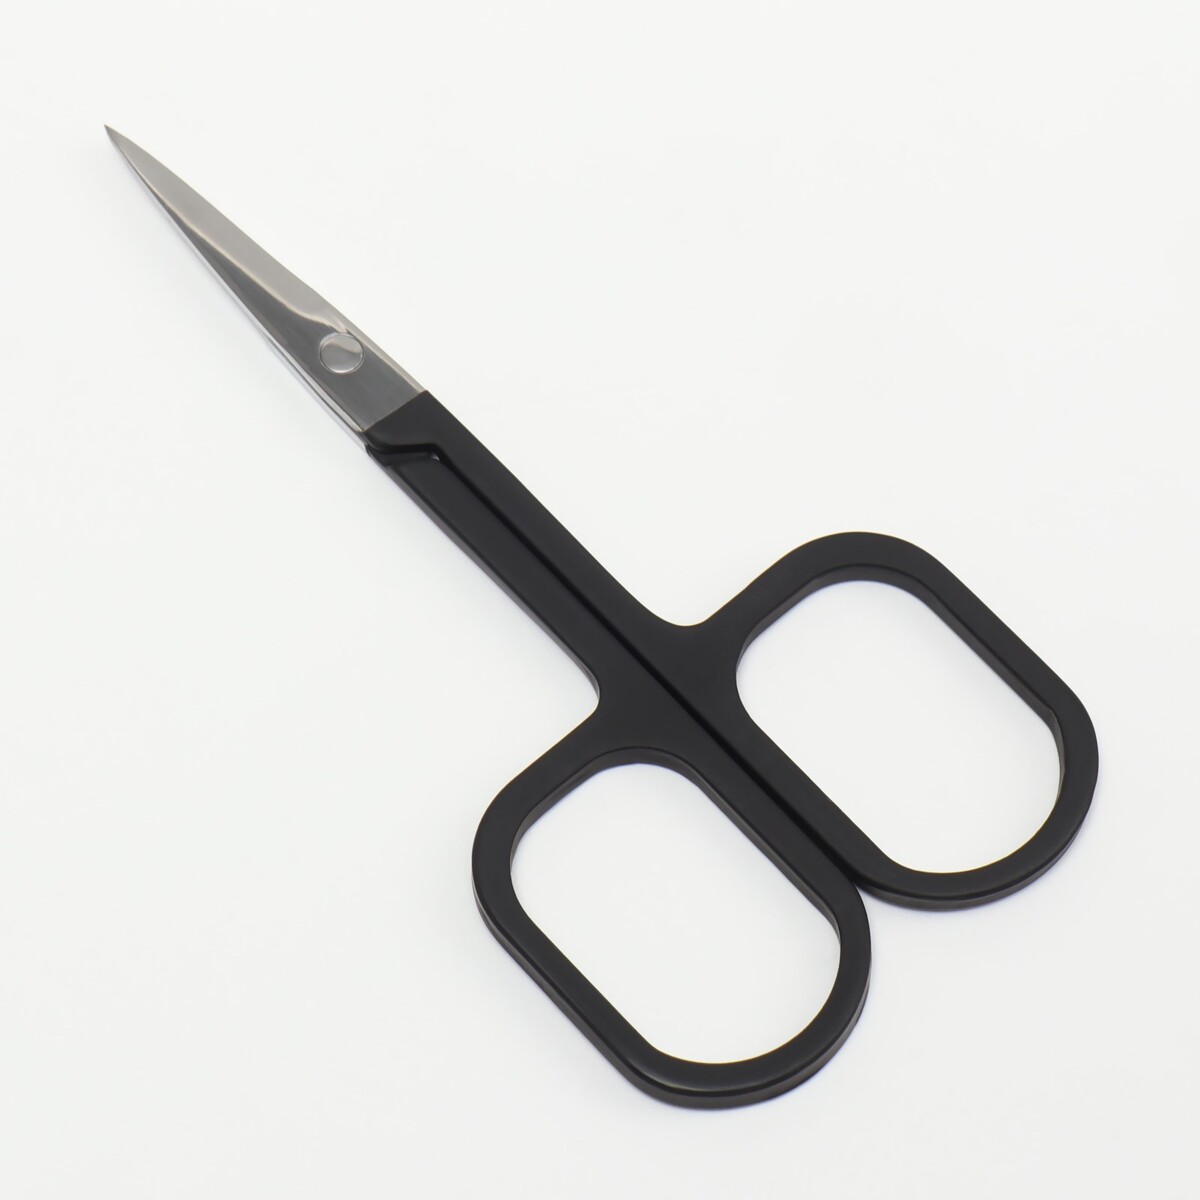 Ножницы маникюрные, узкие, прямые, с прорезиненными ручками, 9 см, цвет серебристый/черный